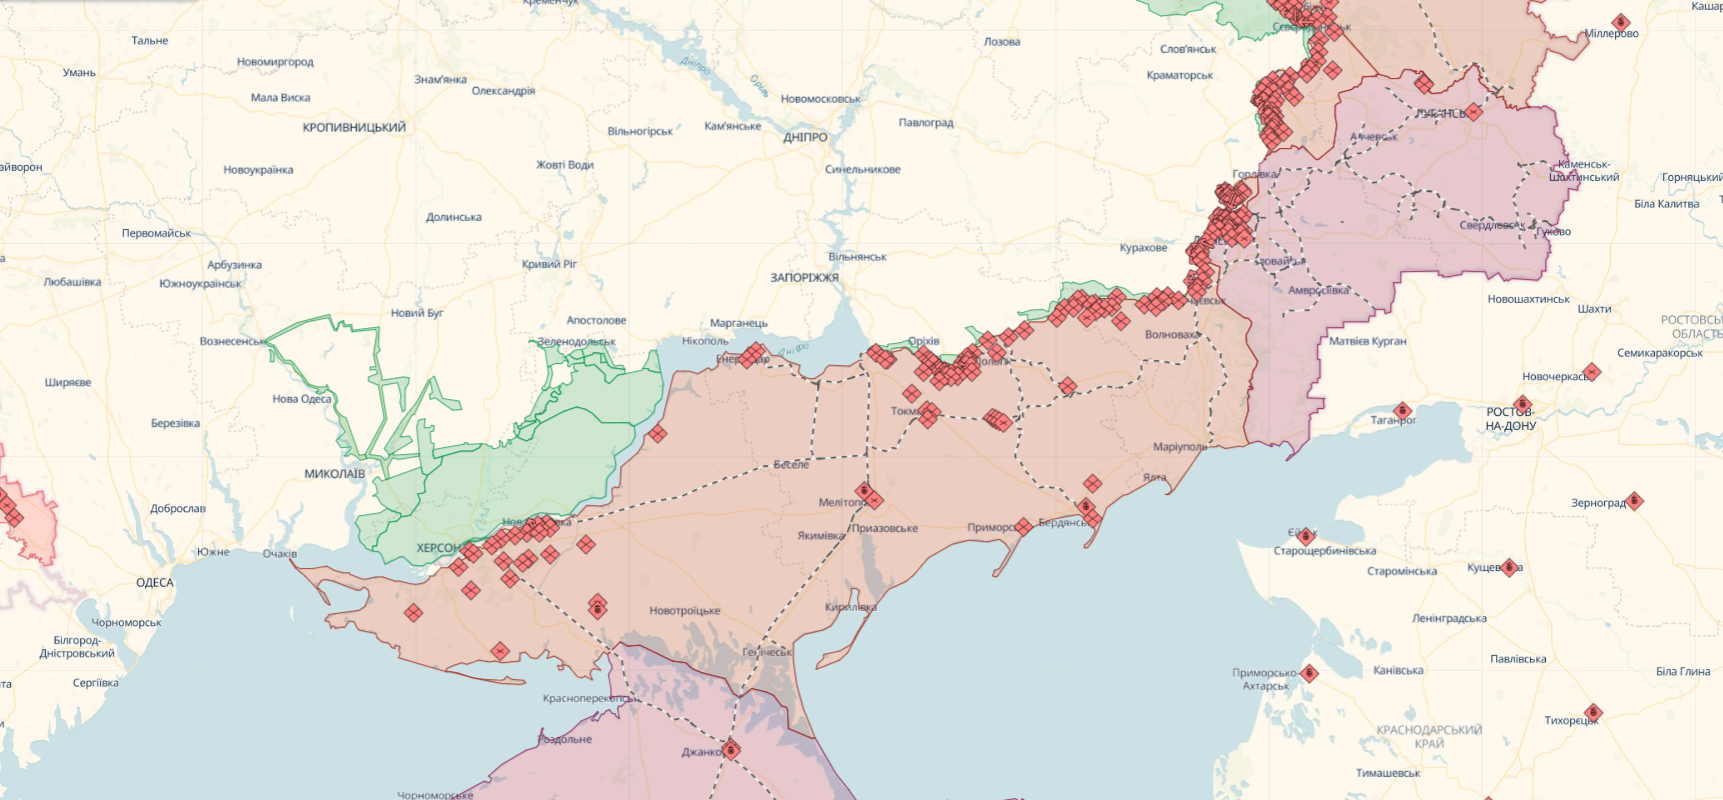 Війська РФ намагаються зайняти Степове та активізувалися в районі Авдіївських дач: у DeepStatе назвали найгарячіші ділянки фронту. Карта 